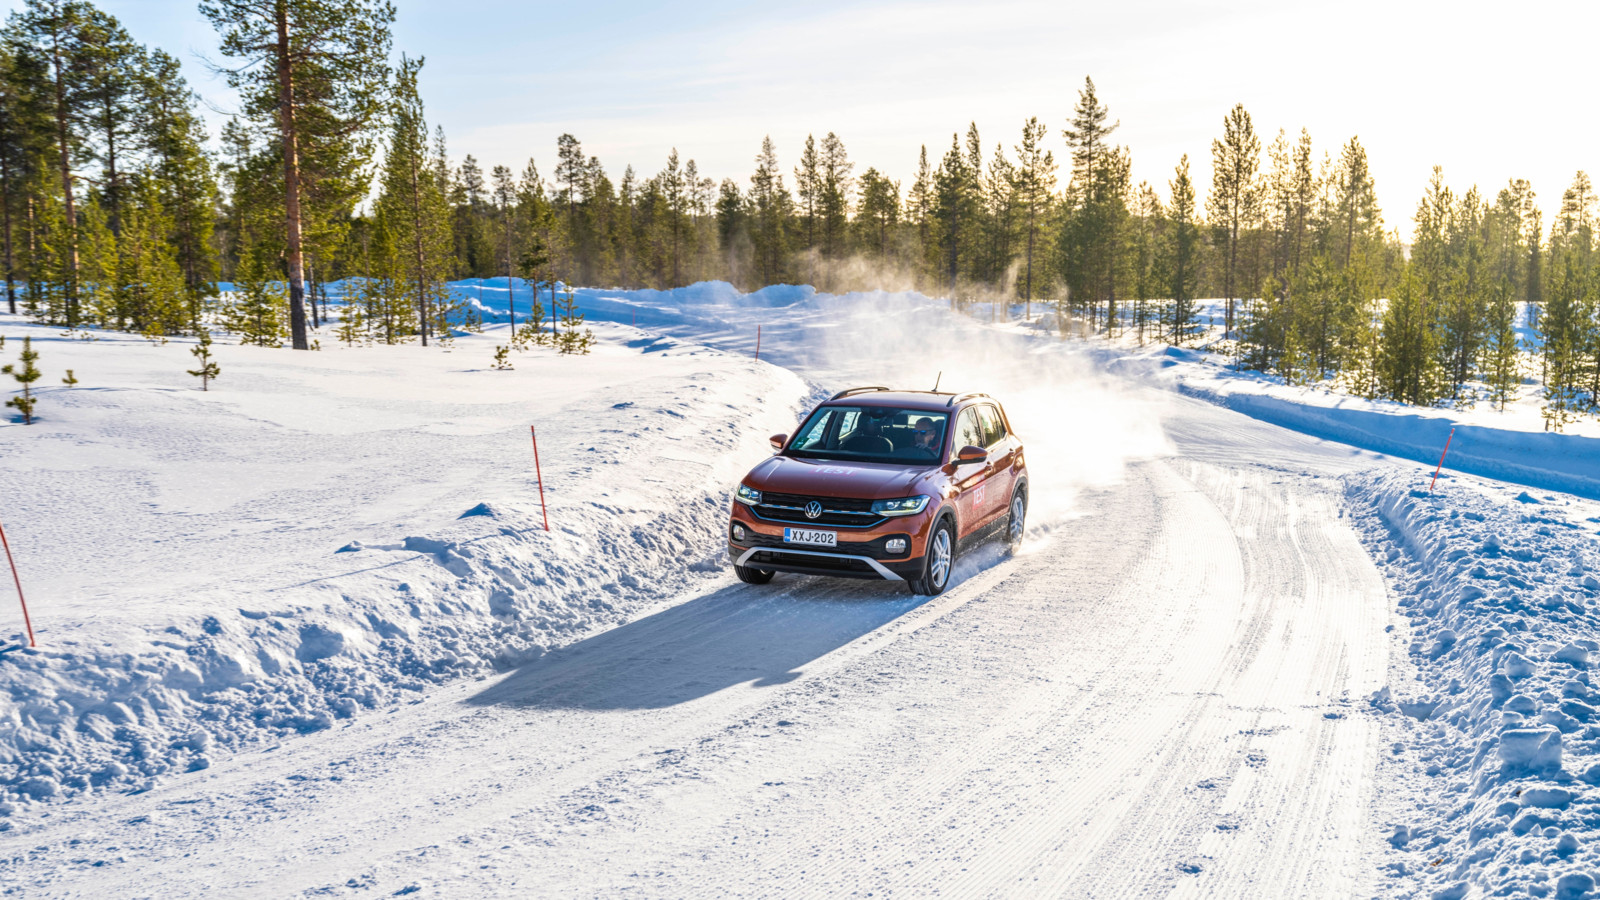 Reifentest auf dem Nokian-Testgelände im arktischen Teil Finnlands.  